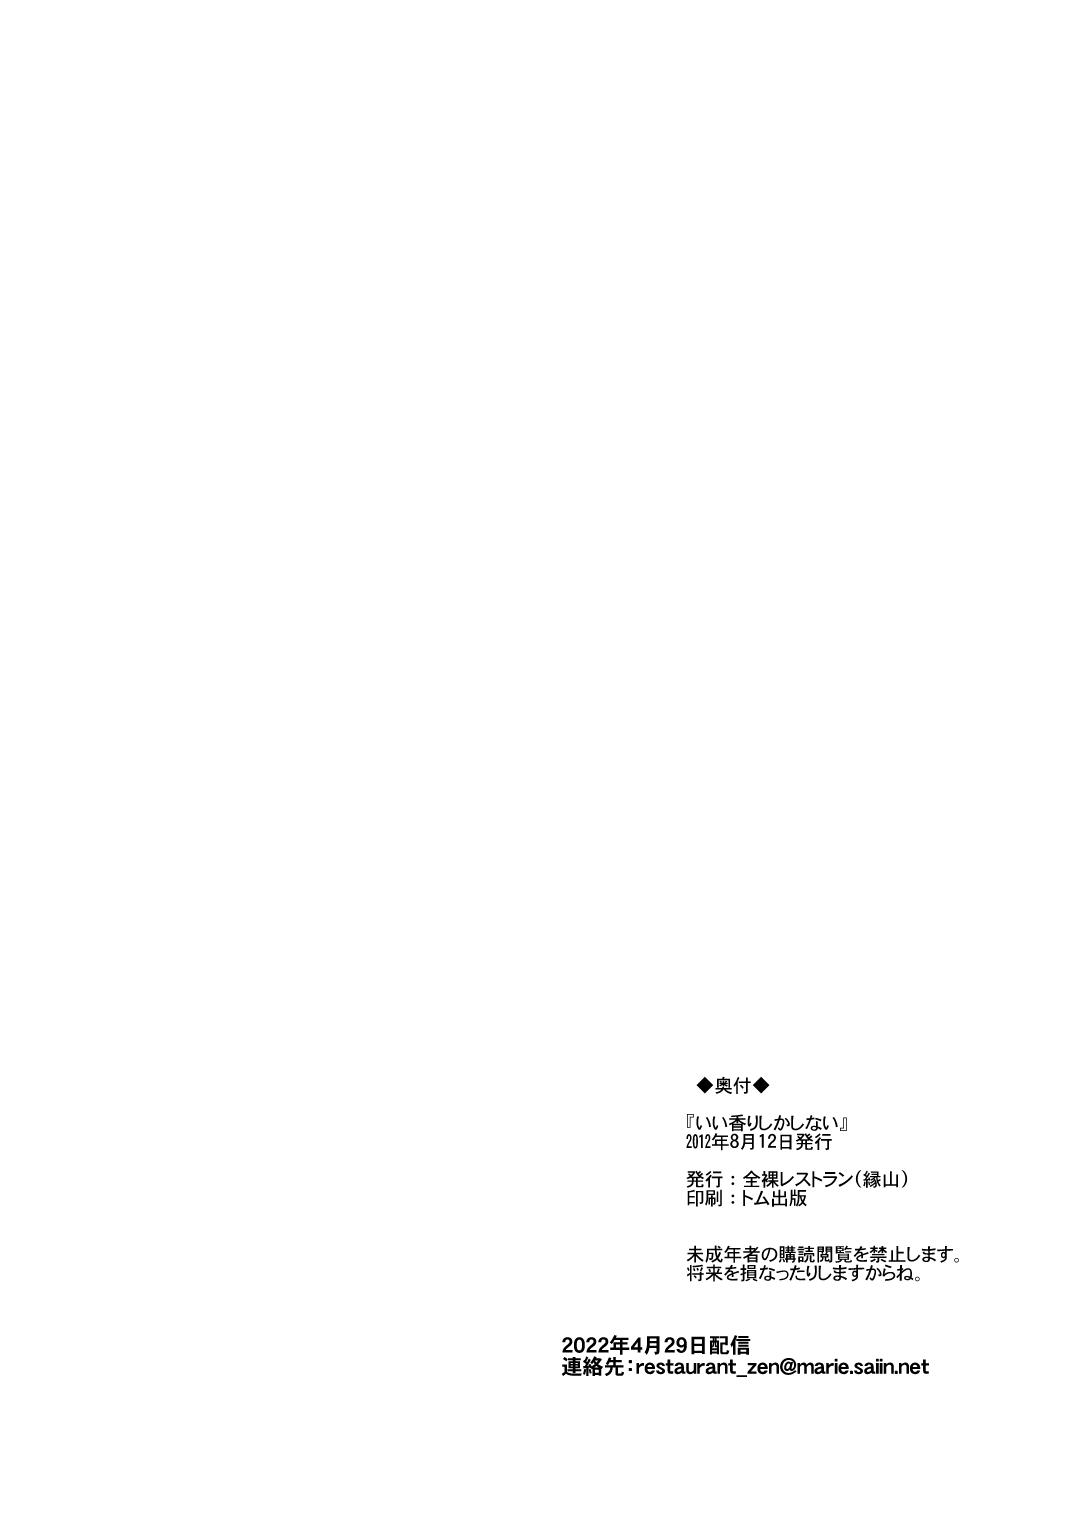 Culona Ii Kaori shika Shinai - Mega man star force | ryuusei no rockman Amiga - Page 26